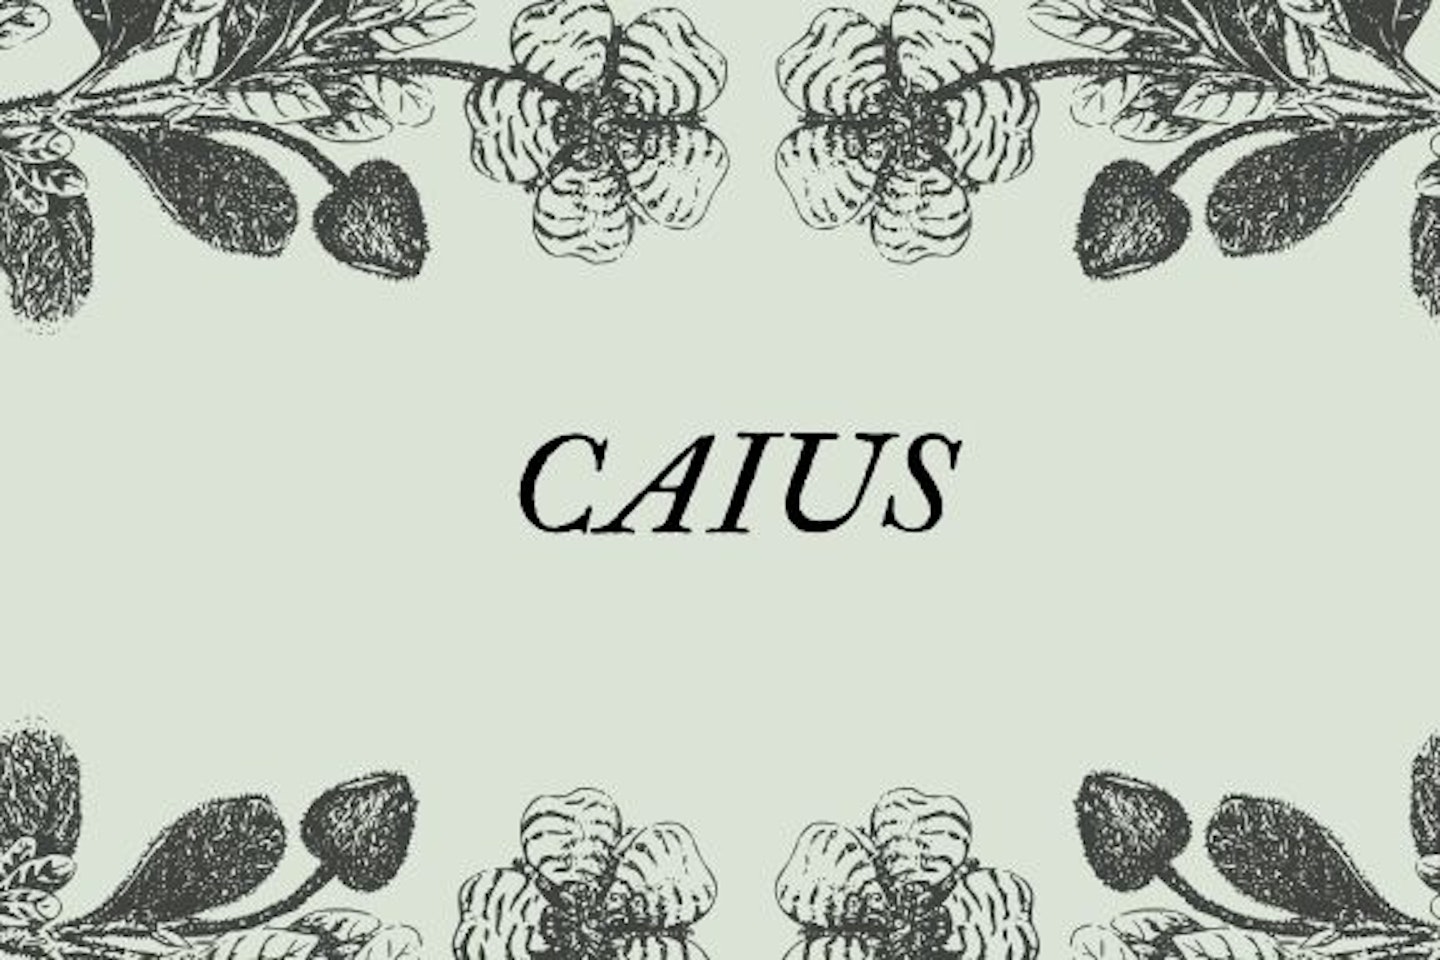 Caius